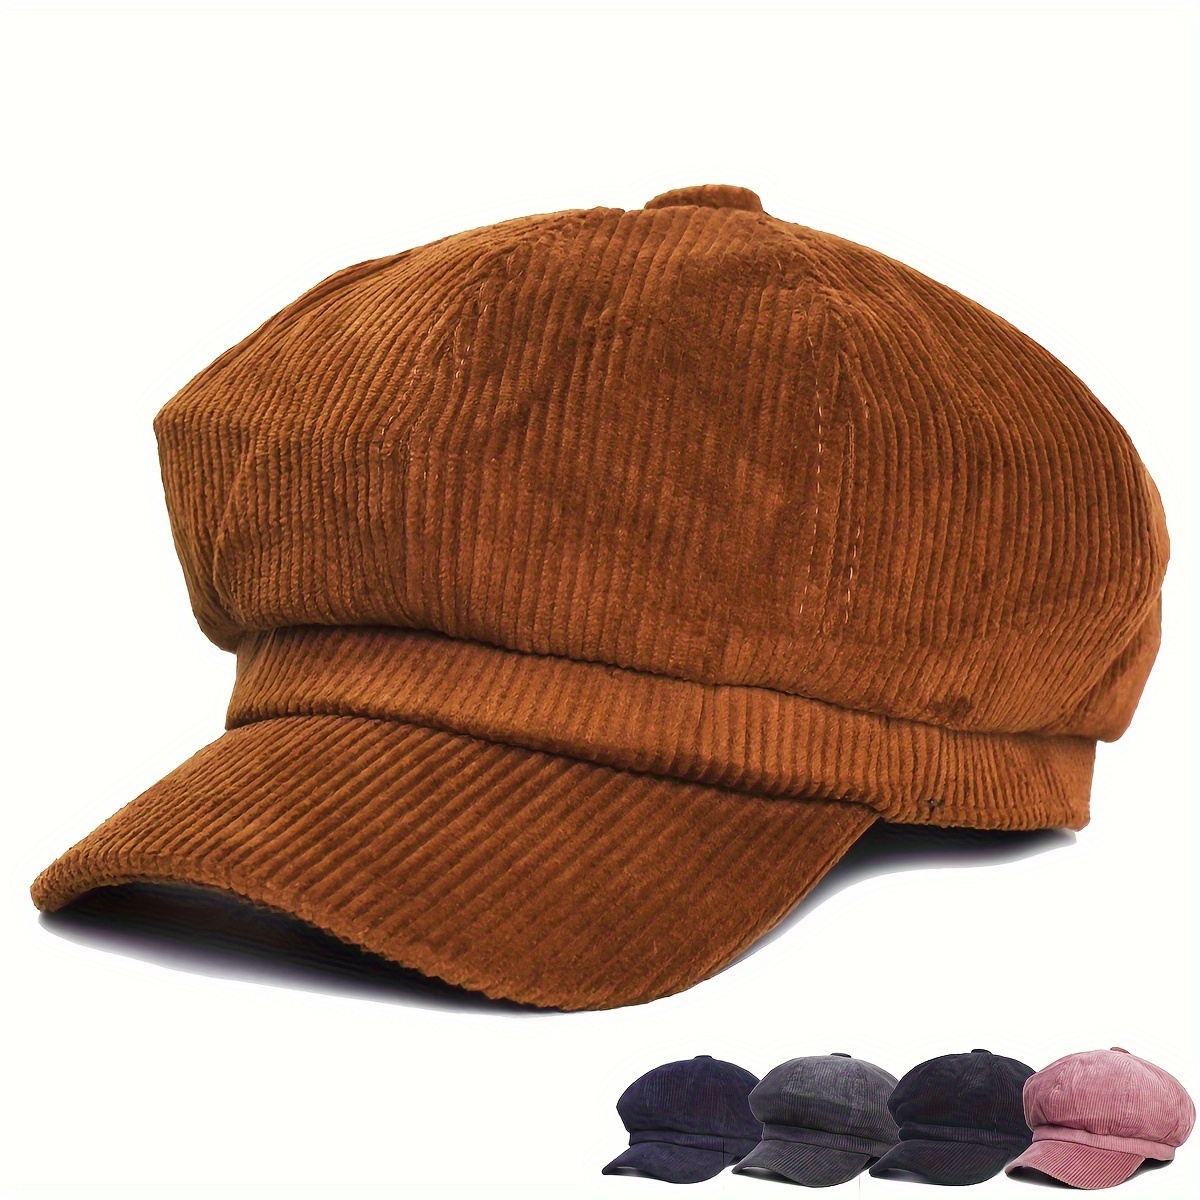 5 gorras de pana para lucir en invierno y en cualquier situación - Showroom